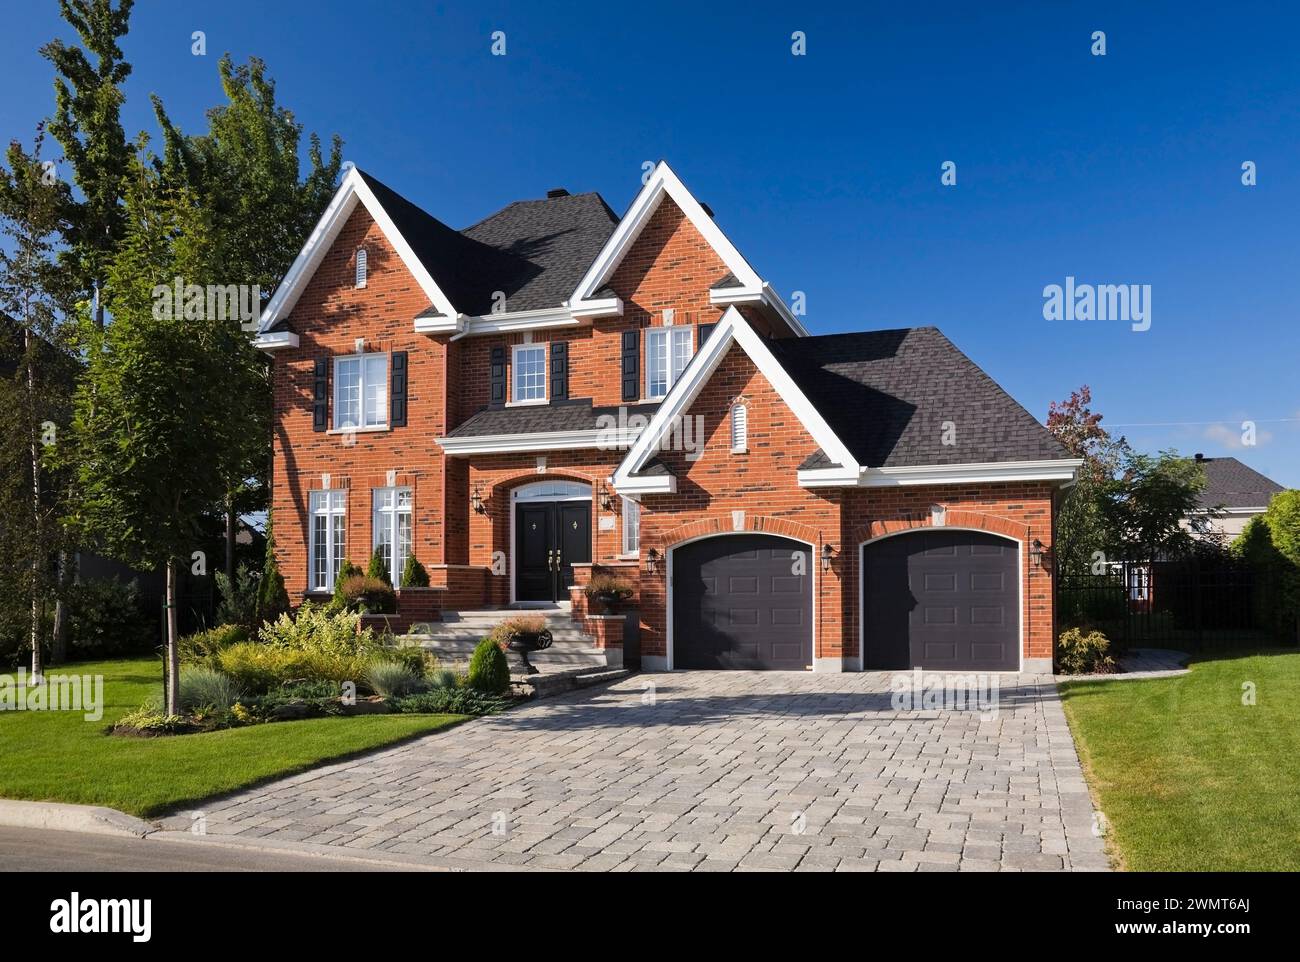 Maison haut de gamme de deux étages en briques rouges et noires avec garage pour deux voitures, allée en pierre pavée et cour avant paysagée en été. Banque D'Images